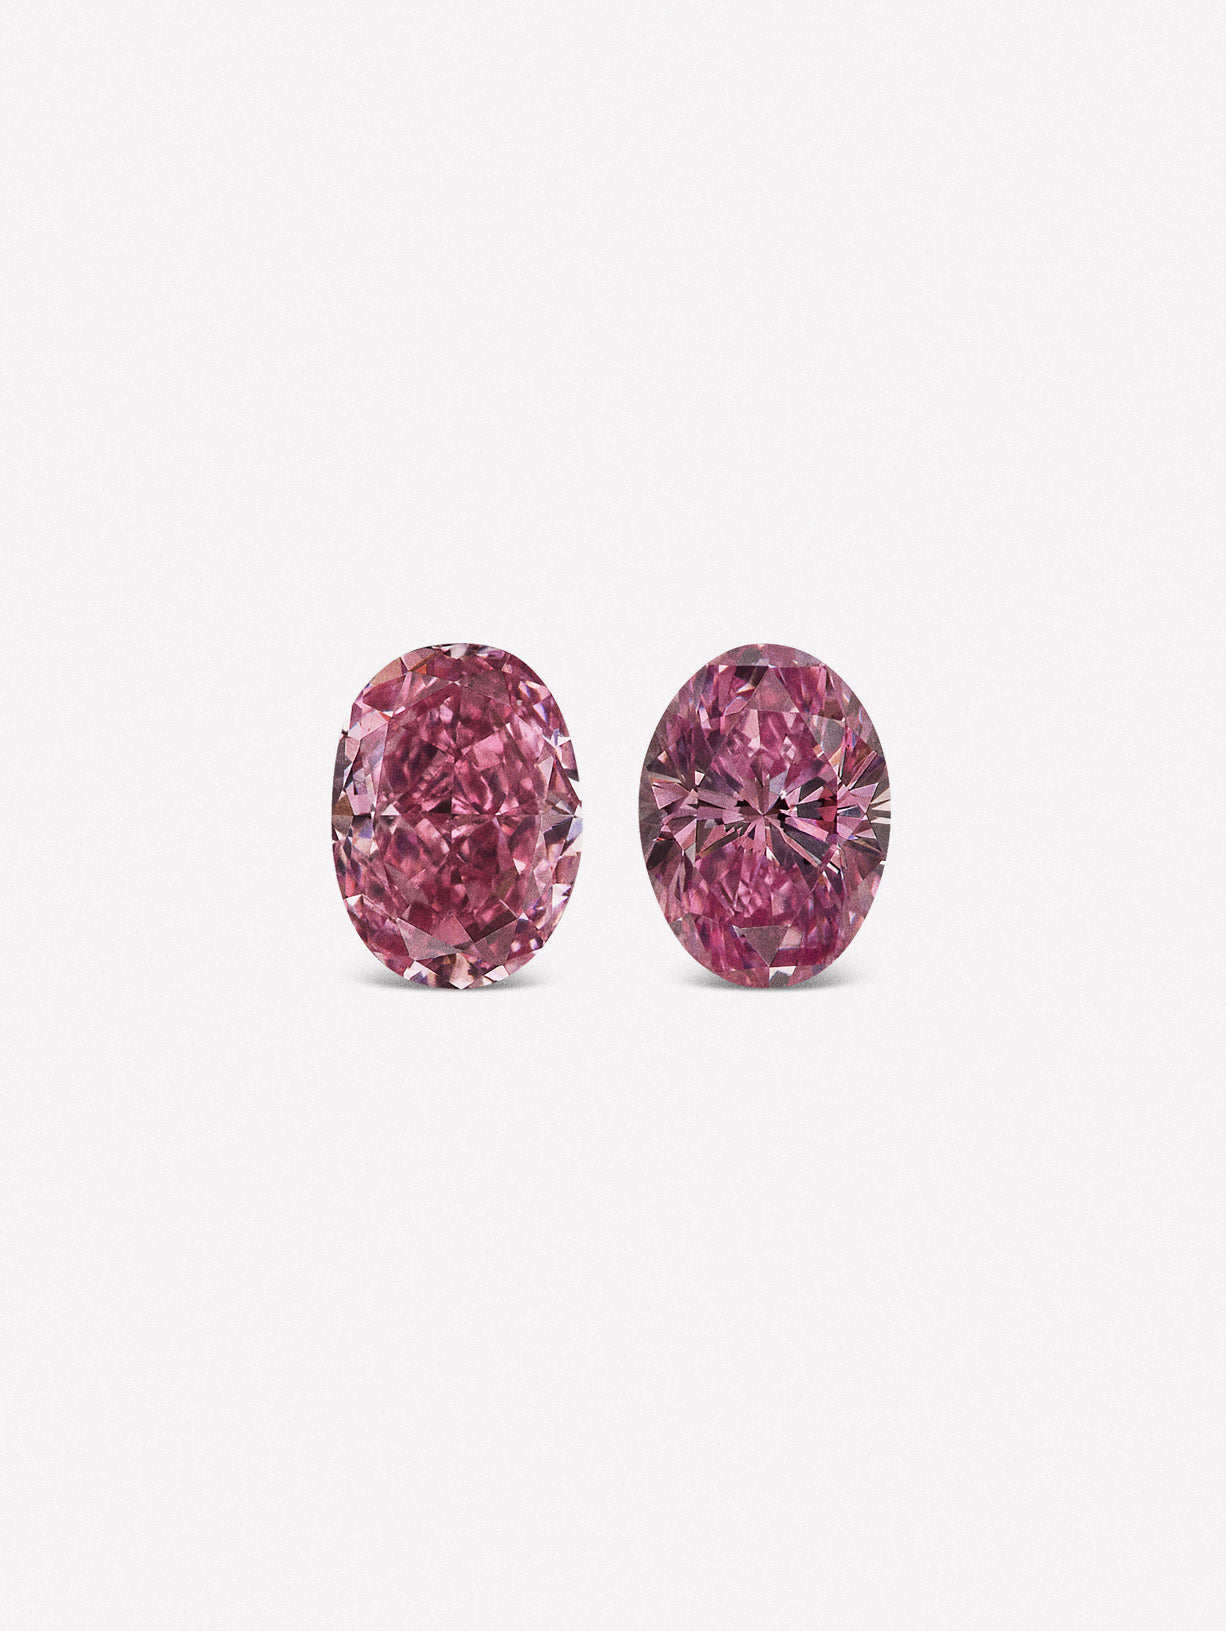 Oval Shaped Argyle Pink™  Diamond Pair - Pink Diamonds, J FINE - J Fine, Pink Diamond - Pink Diamond Jewelry, oval-shaped-argyle-pink™-diamond-pair-1 - Argyle Pink Diamonds